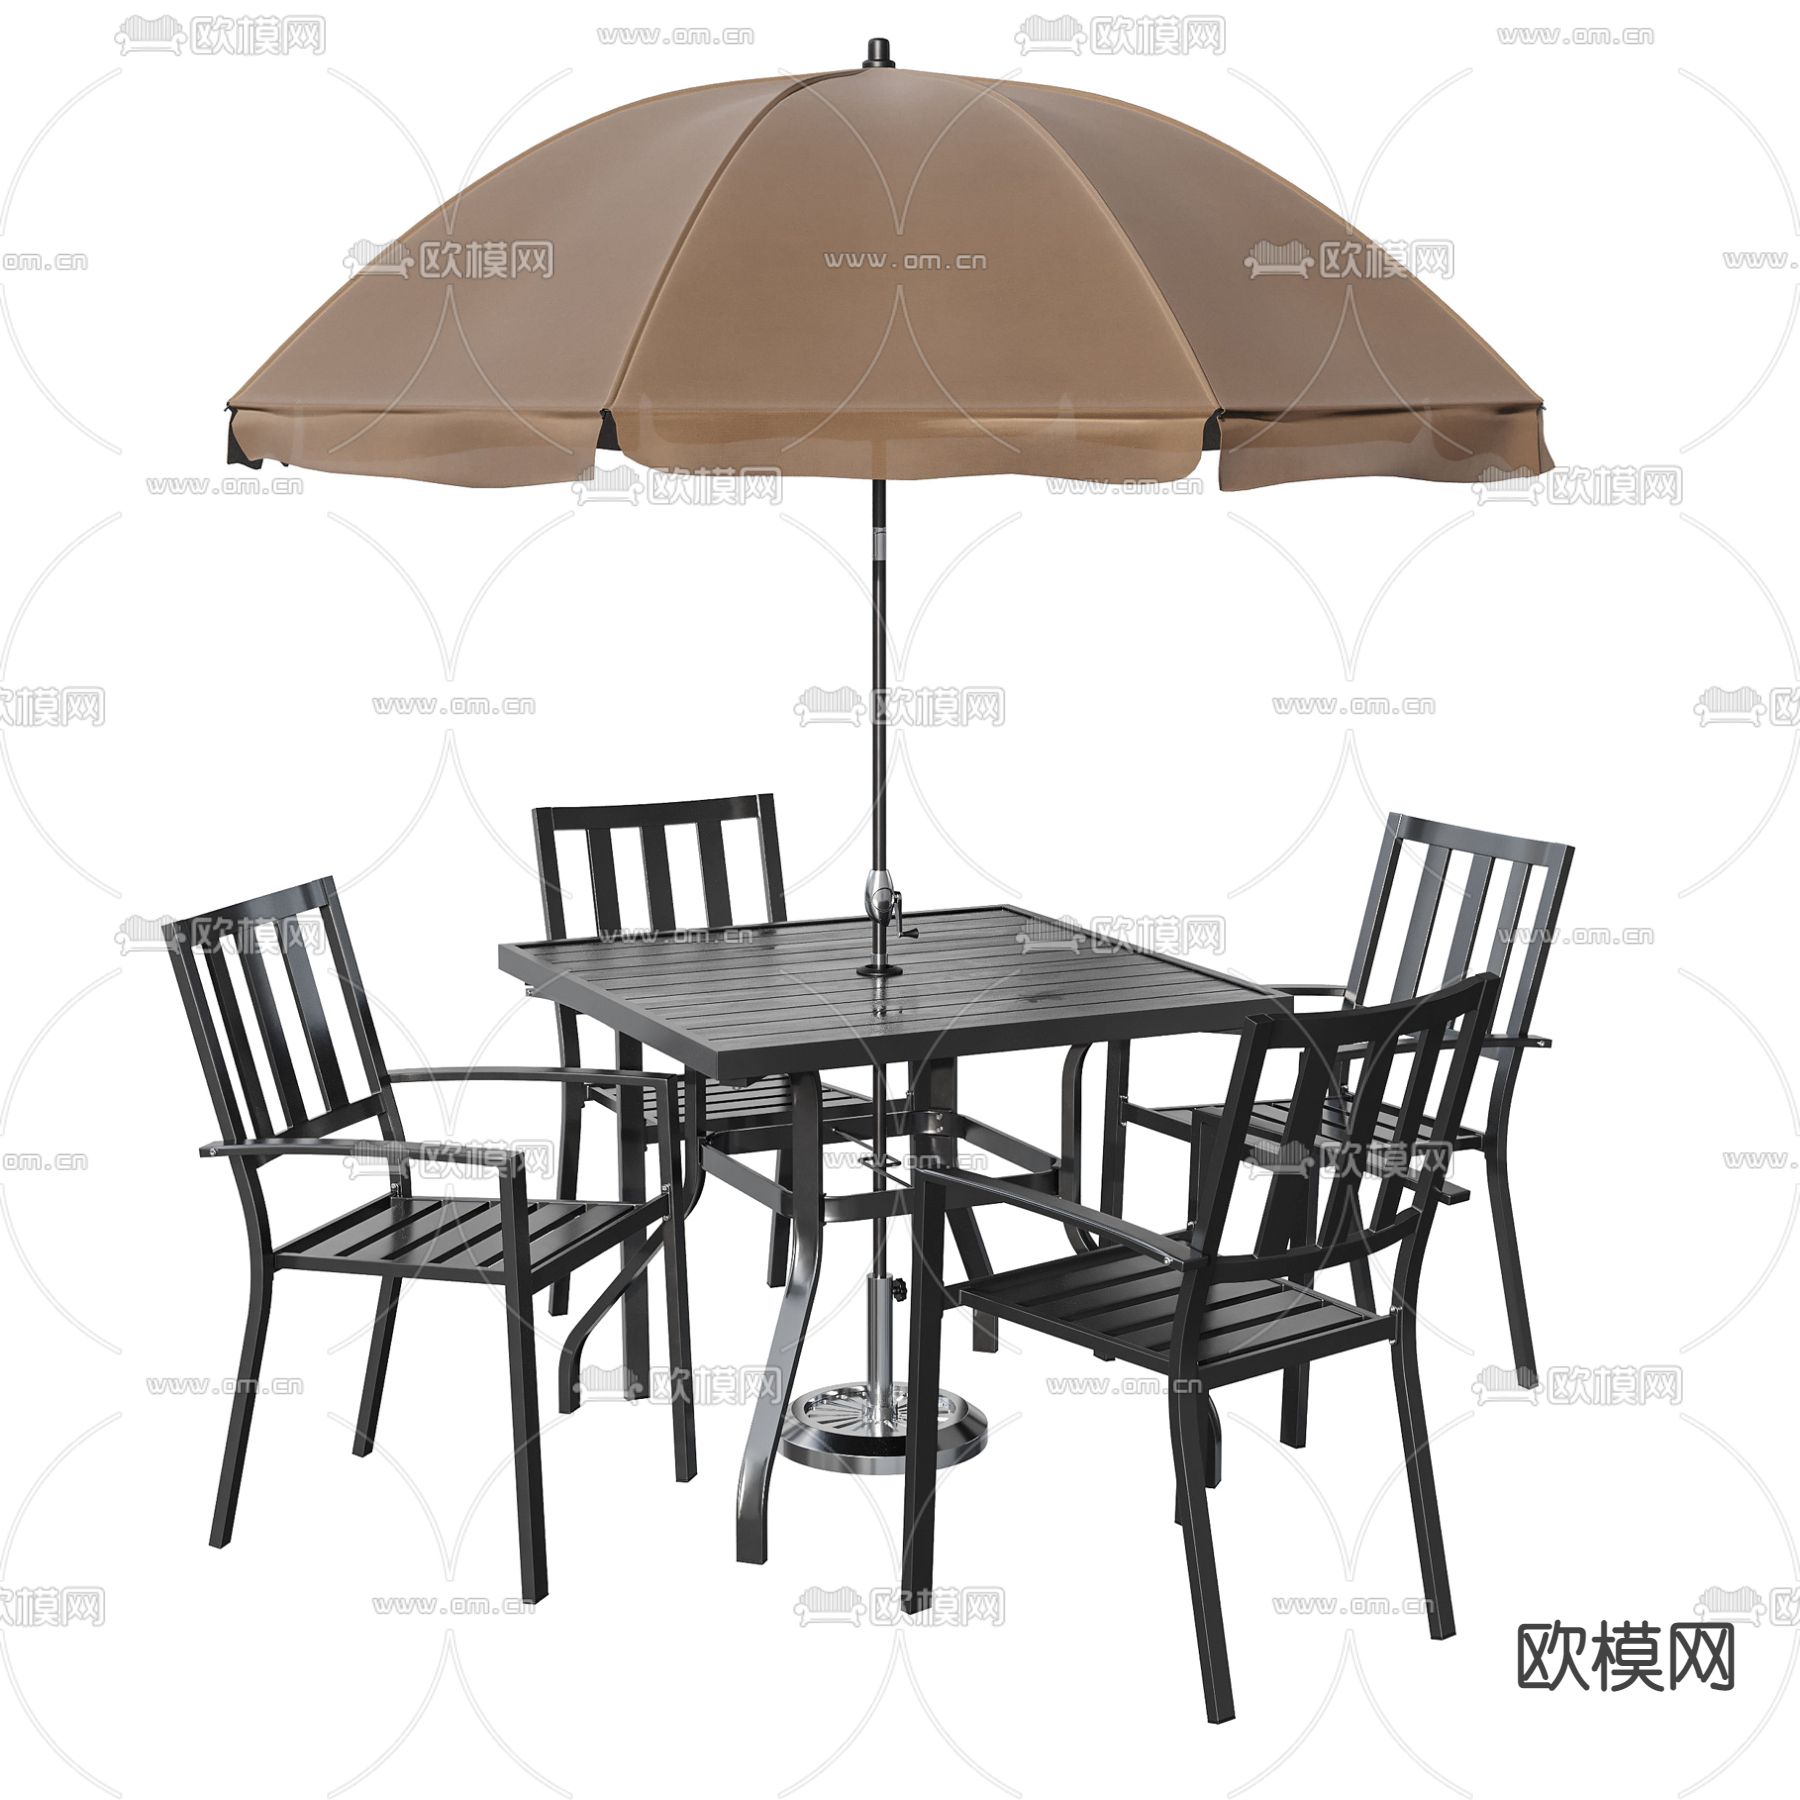 04-5户外休闲木桌椅子遮阳伞组合-SketchUp资源网